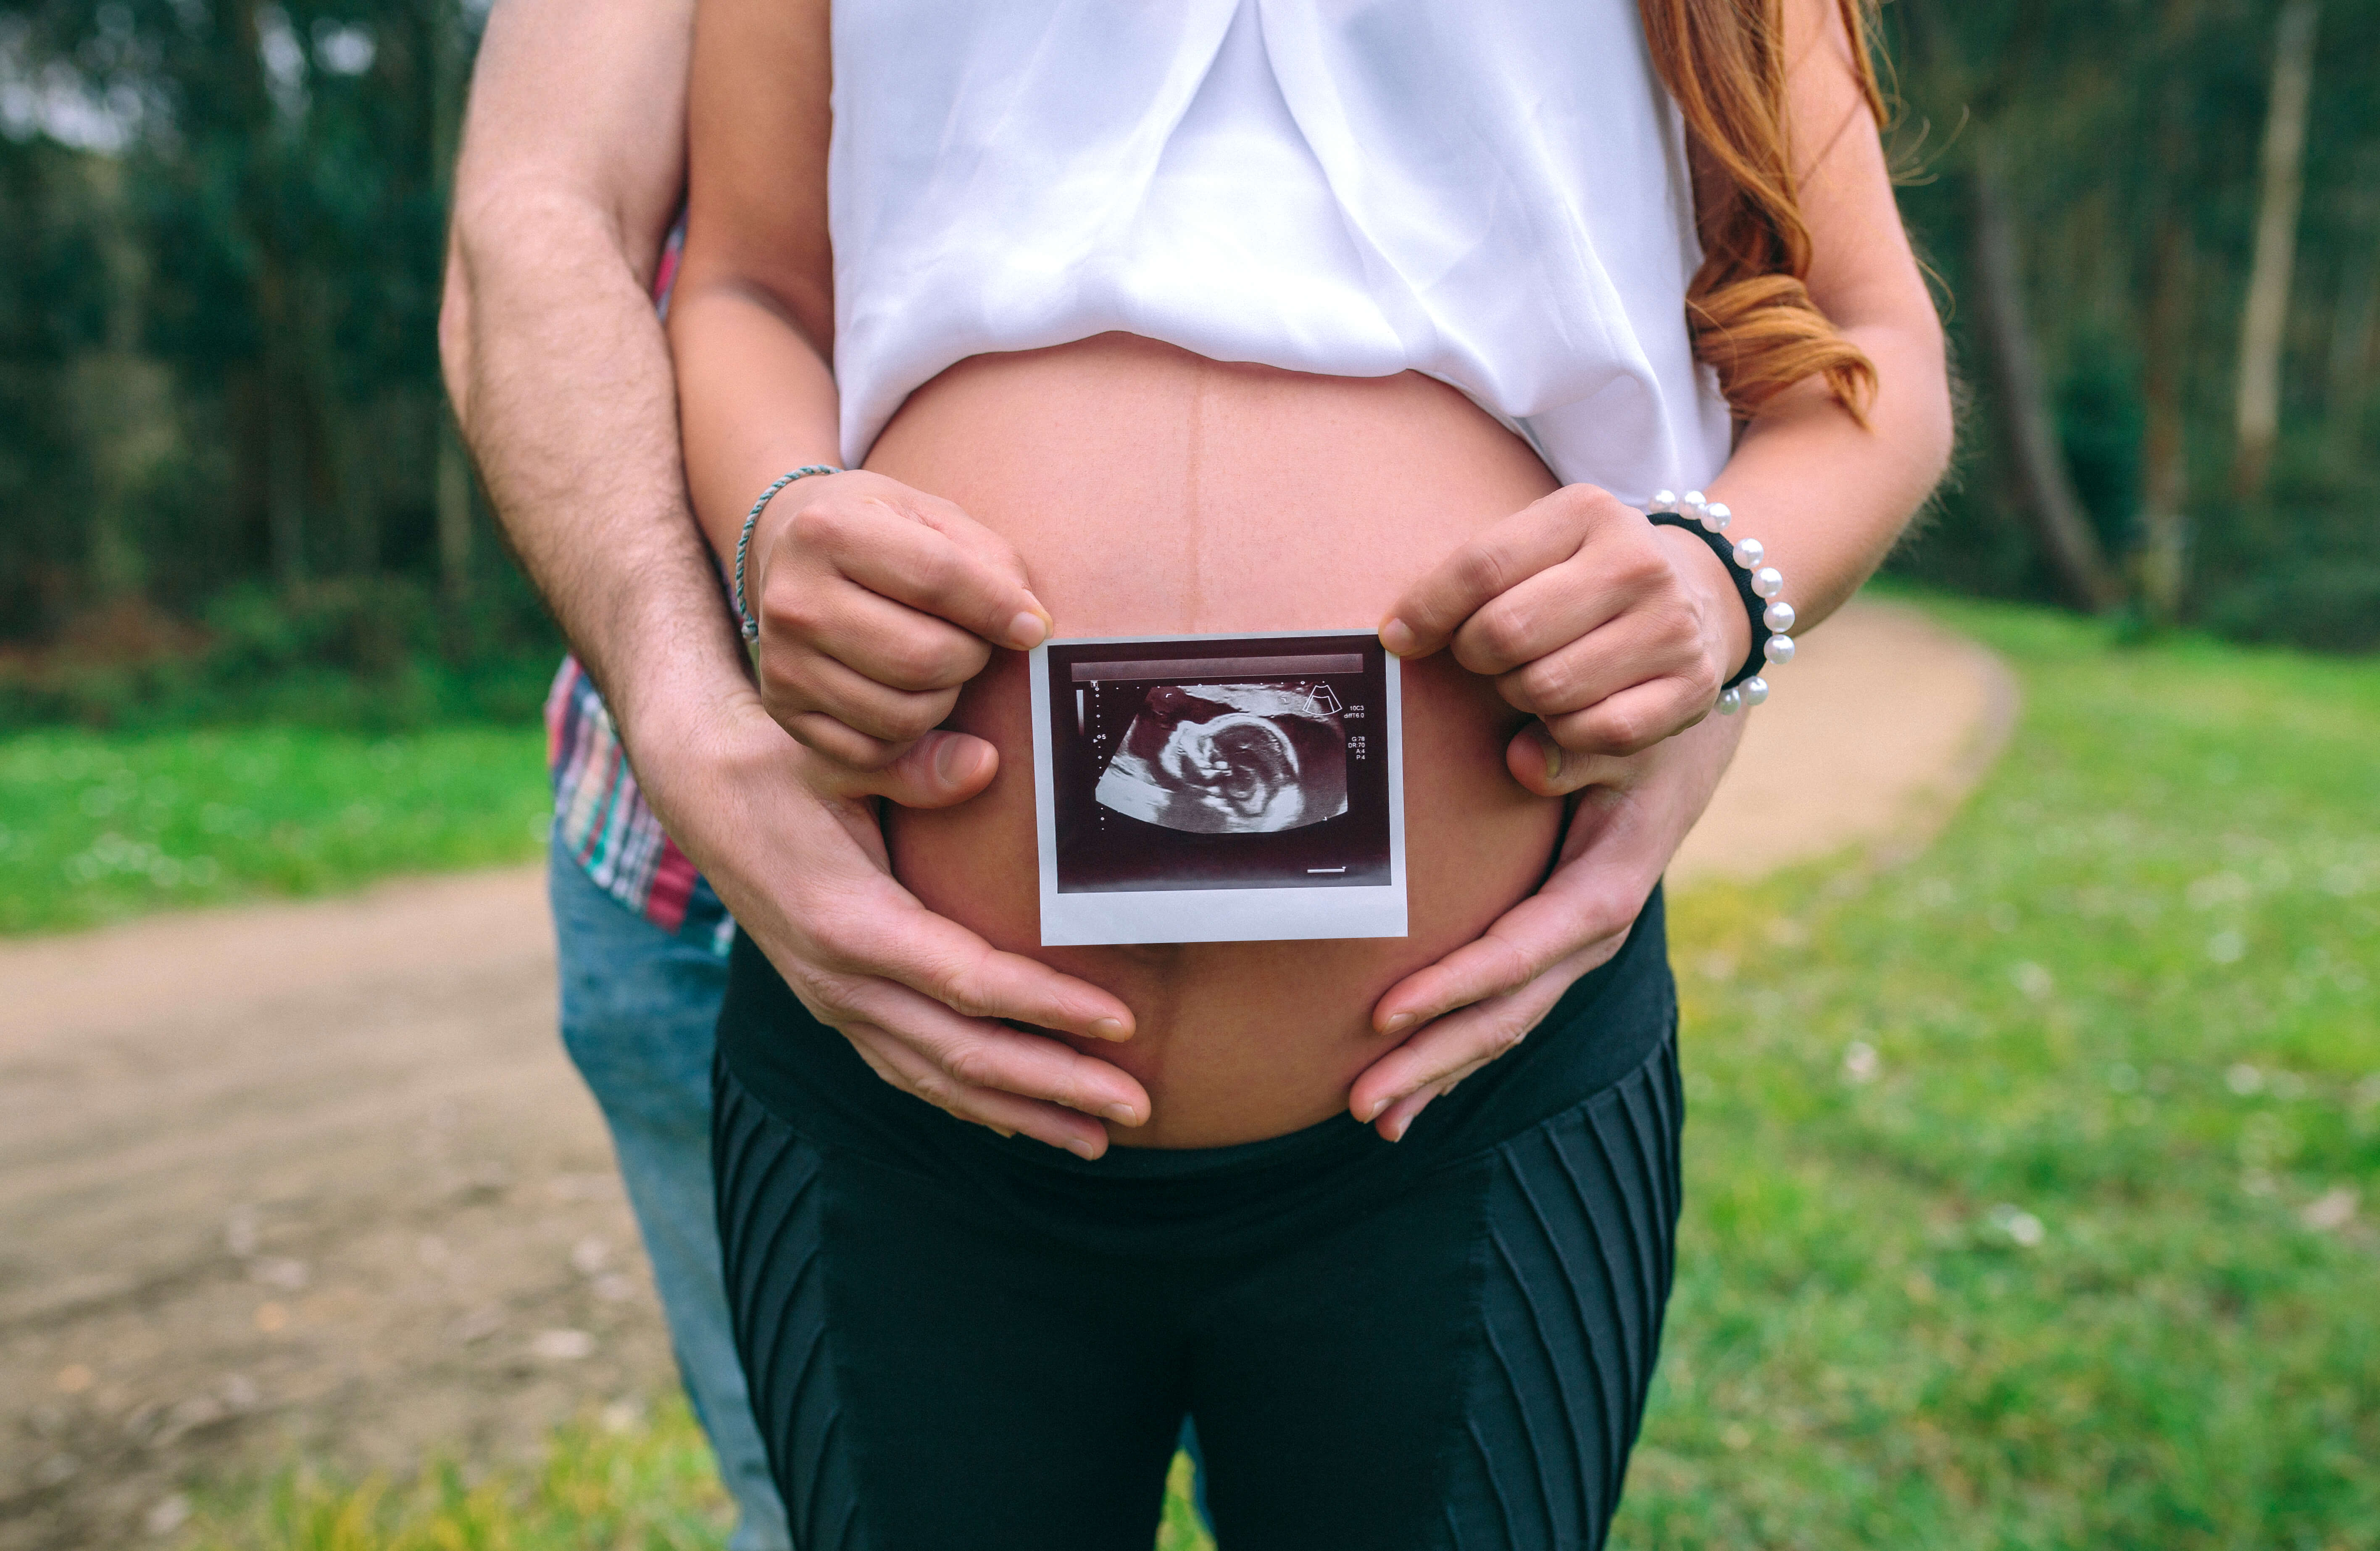 linea nigra olan hamile kadın ultrasonunu gösteriyor